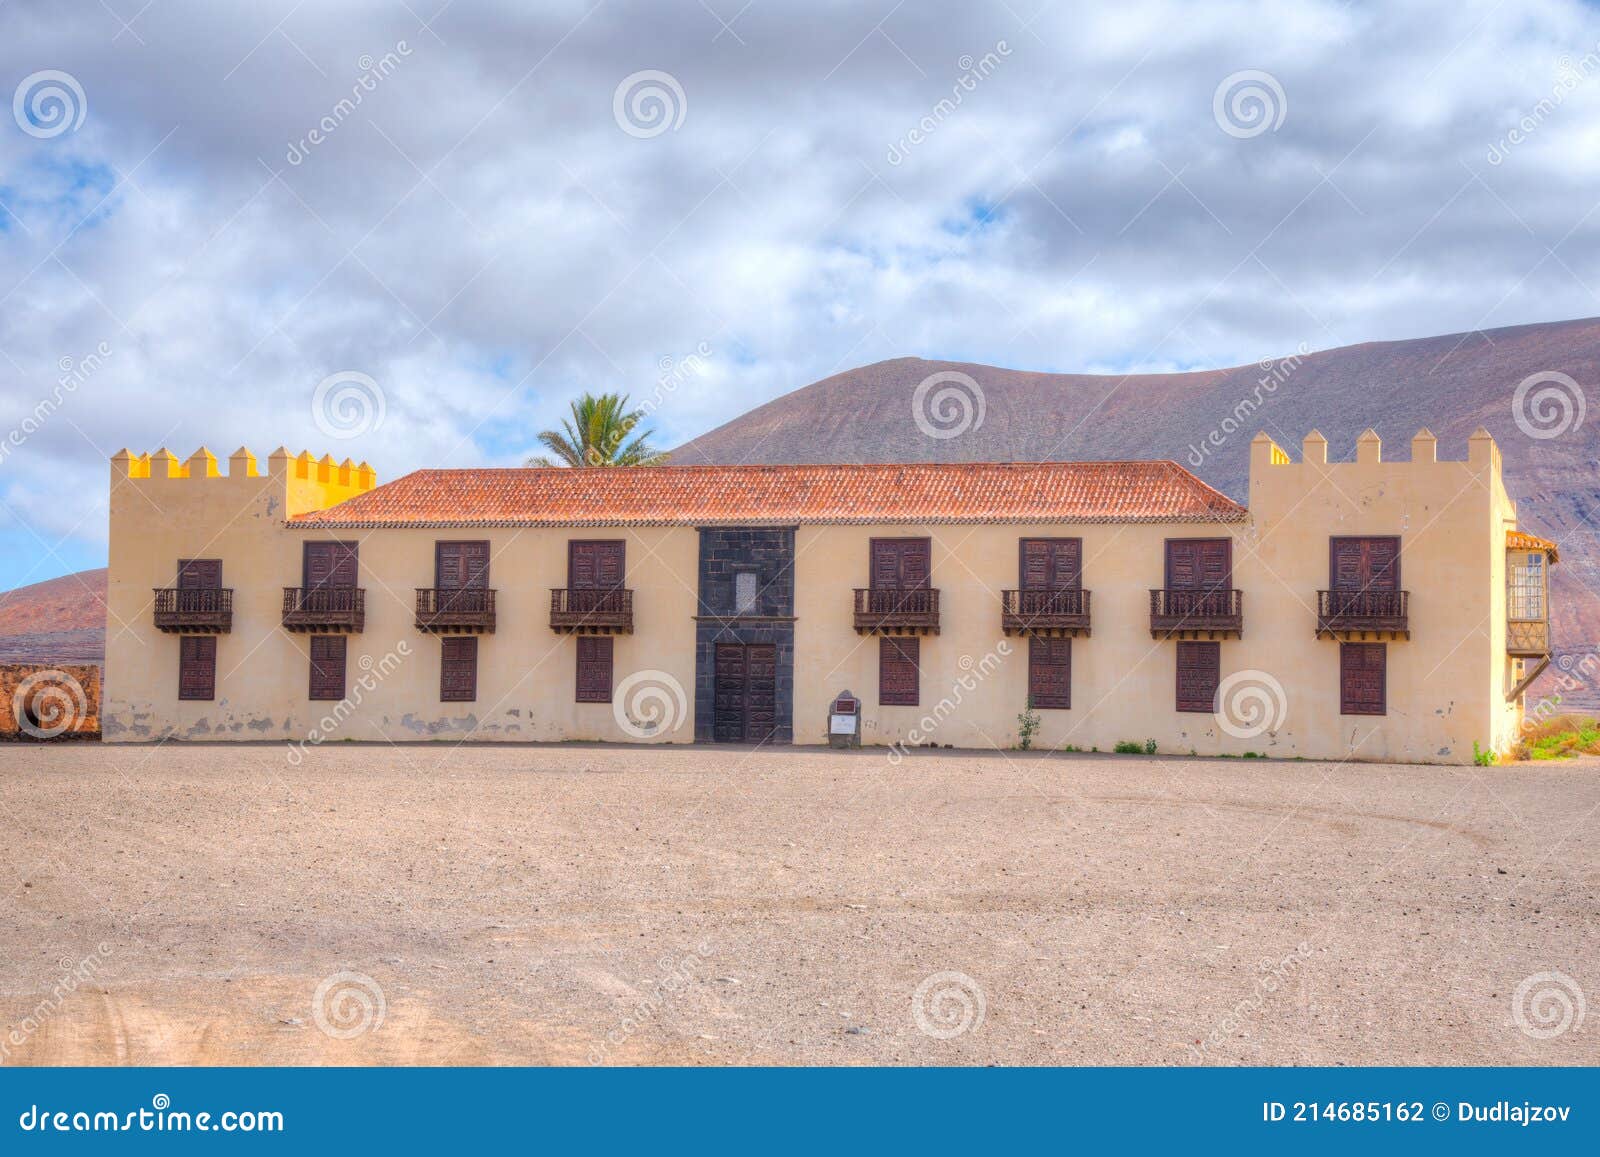 casa de los coroneles at la oliva, fuerteventura, canary islands, spain